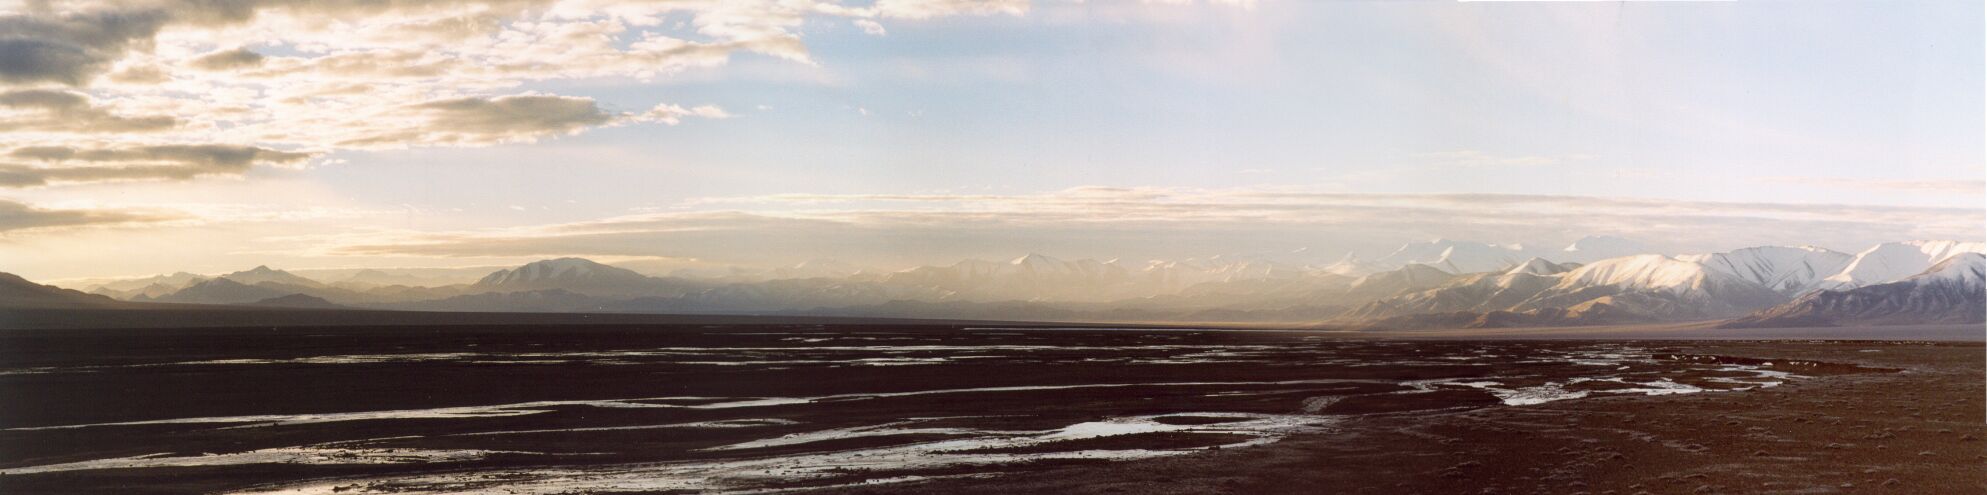 Общая панорама плато Губайлык [А.Чхетиани]